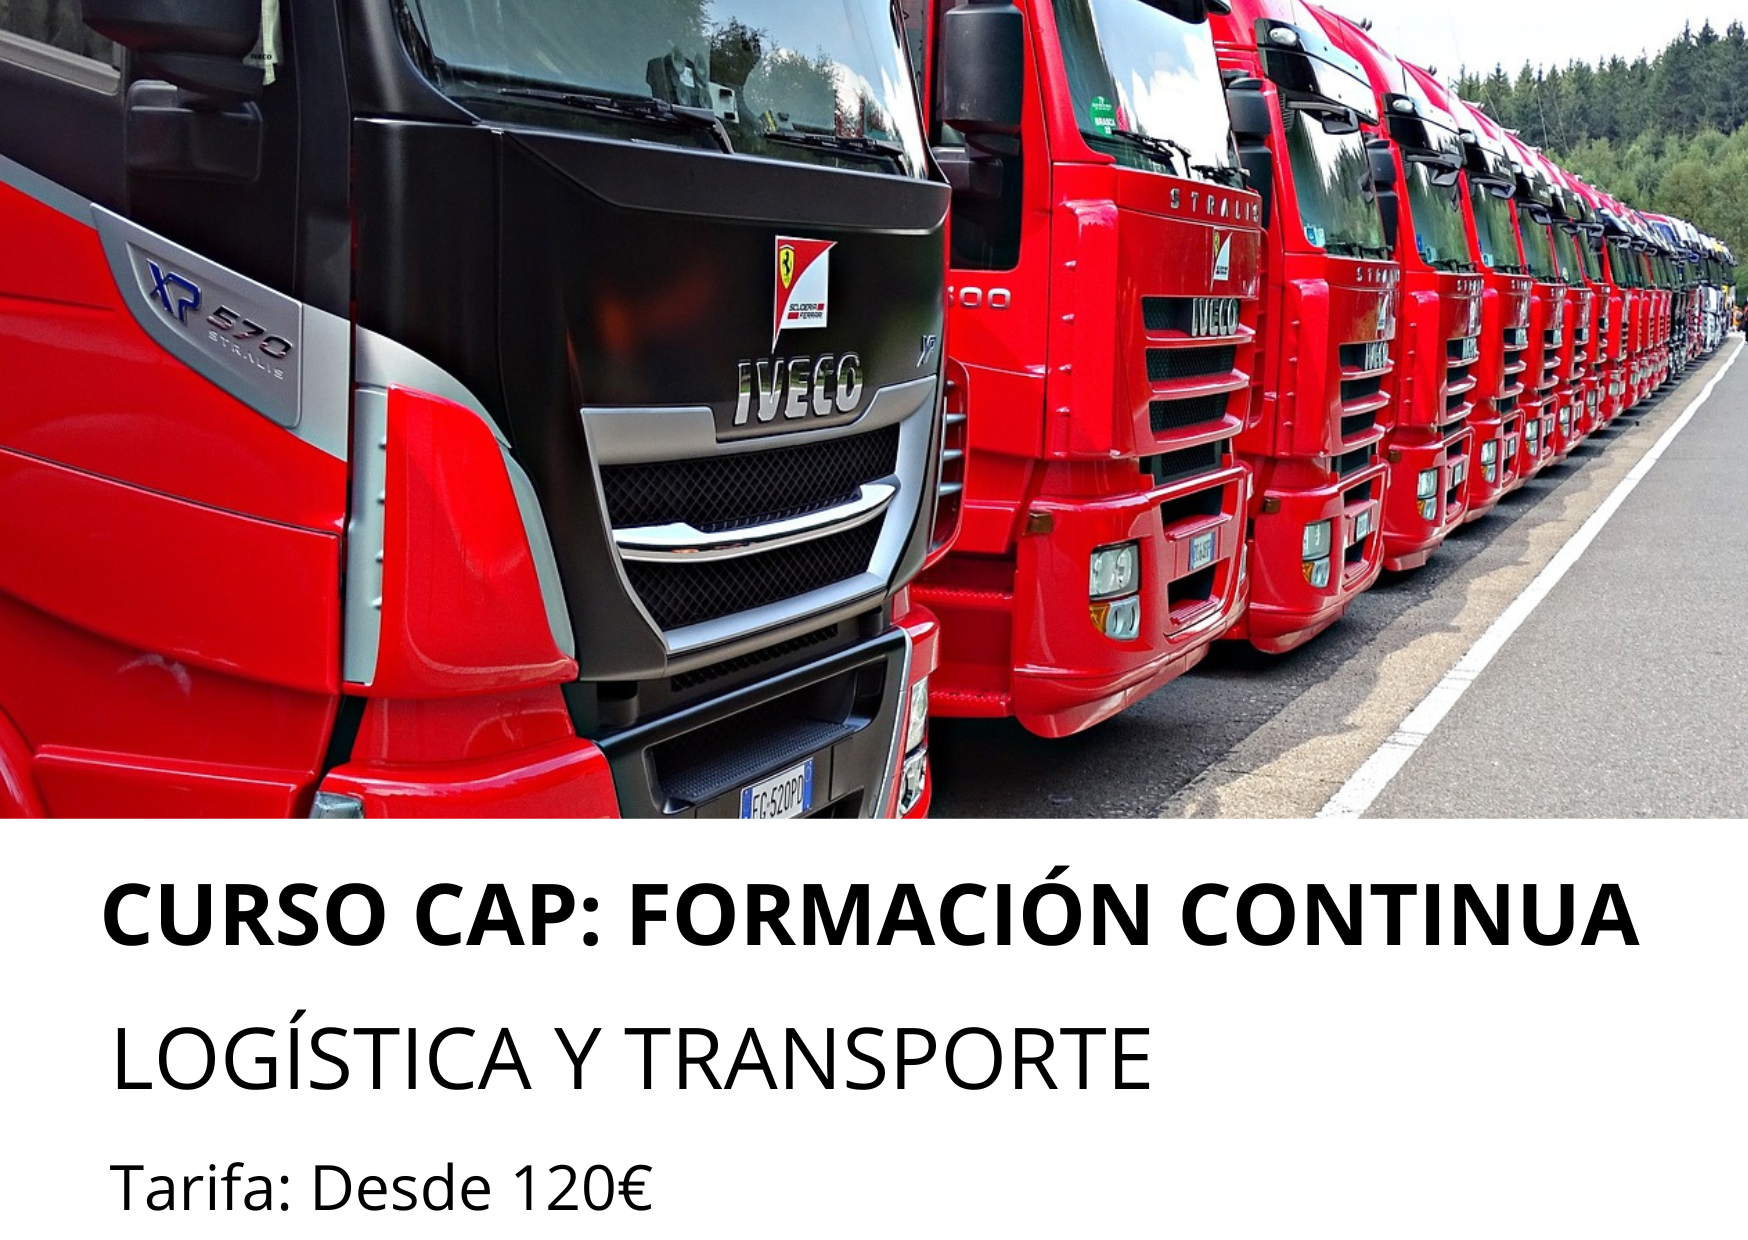 Curso logistica y transporte en Madrid